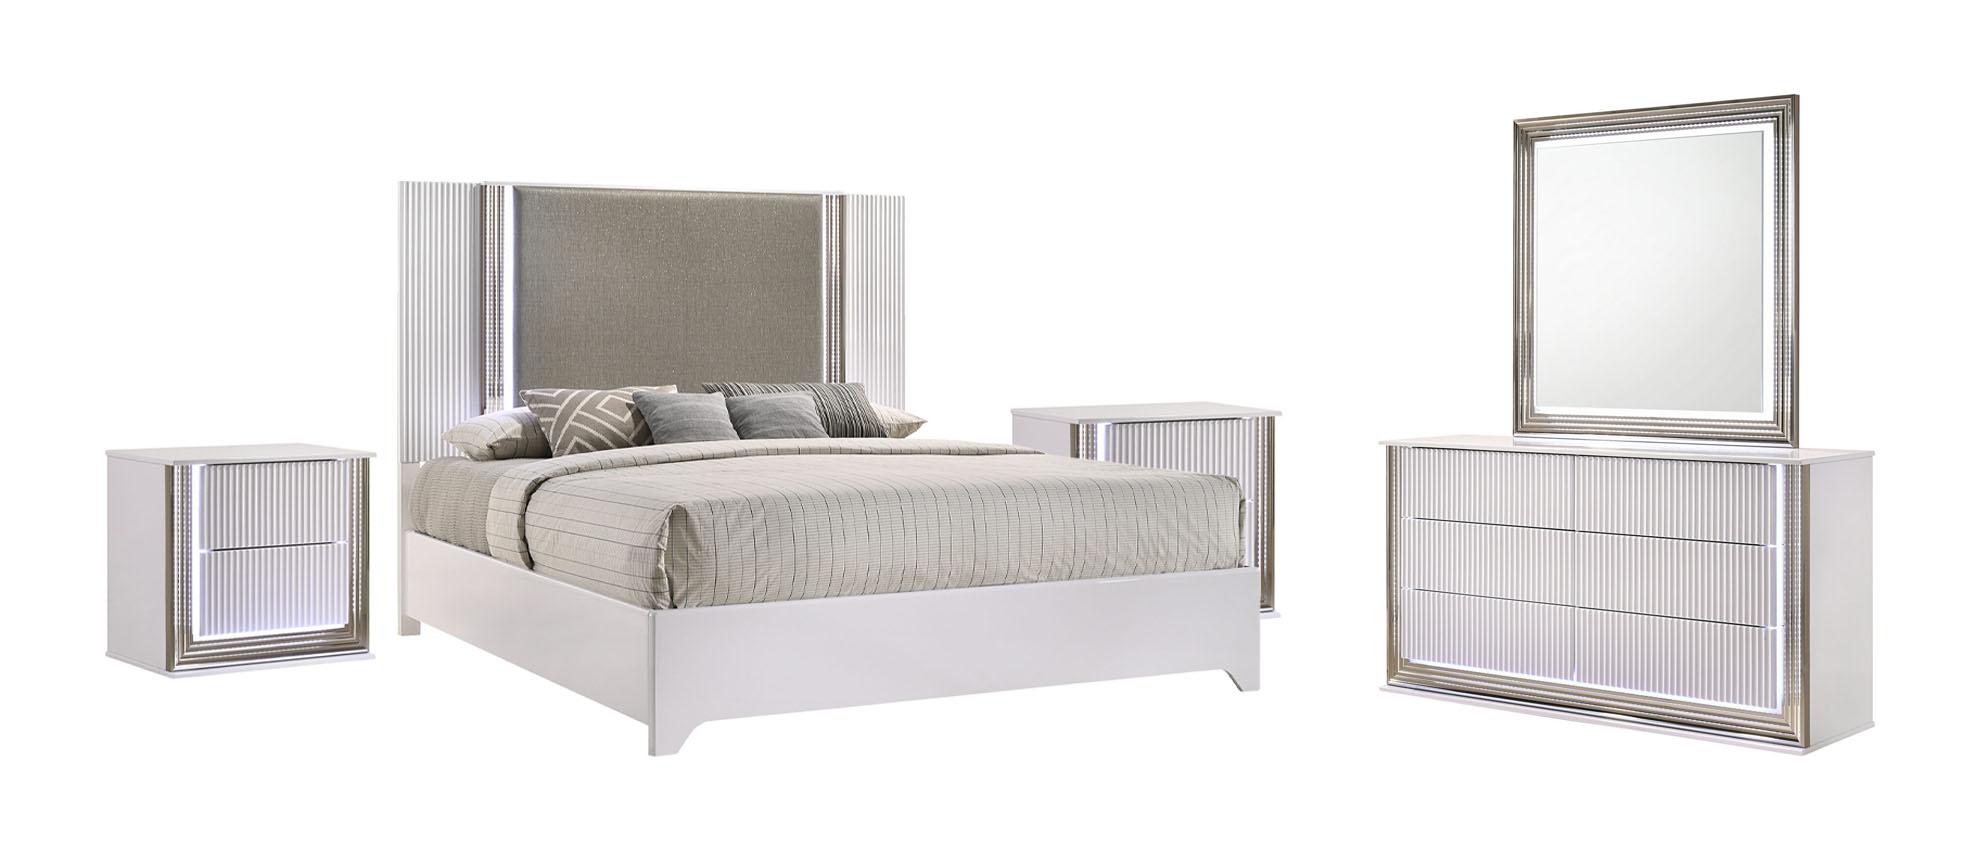 Modern Platform Bedroom Set ASPEN ASPEN-WHITE-KB-Set-5 in White Faux Leather